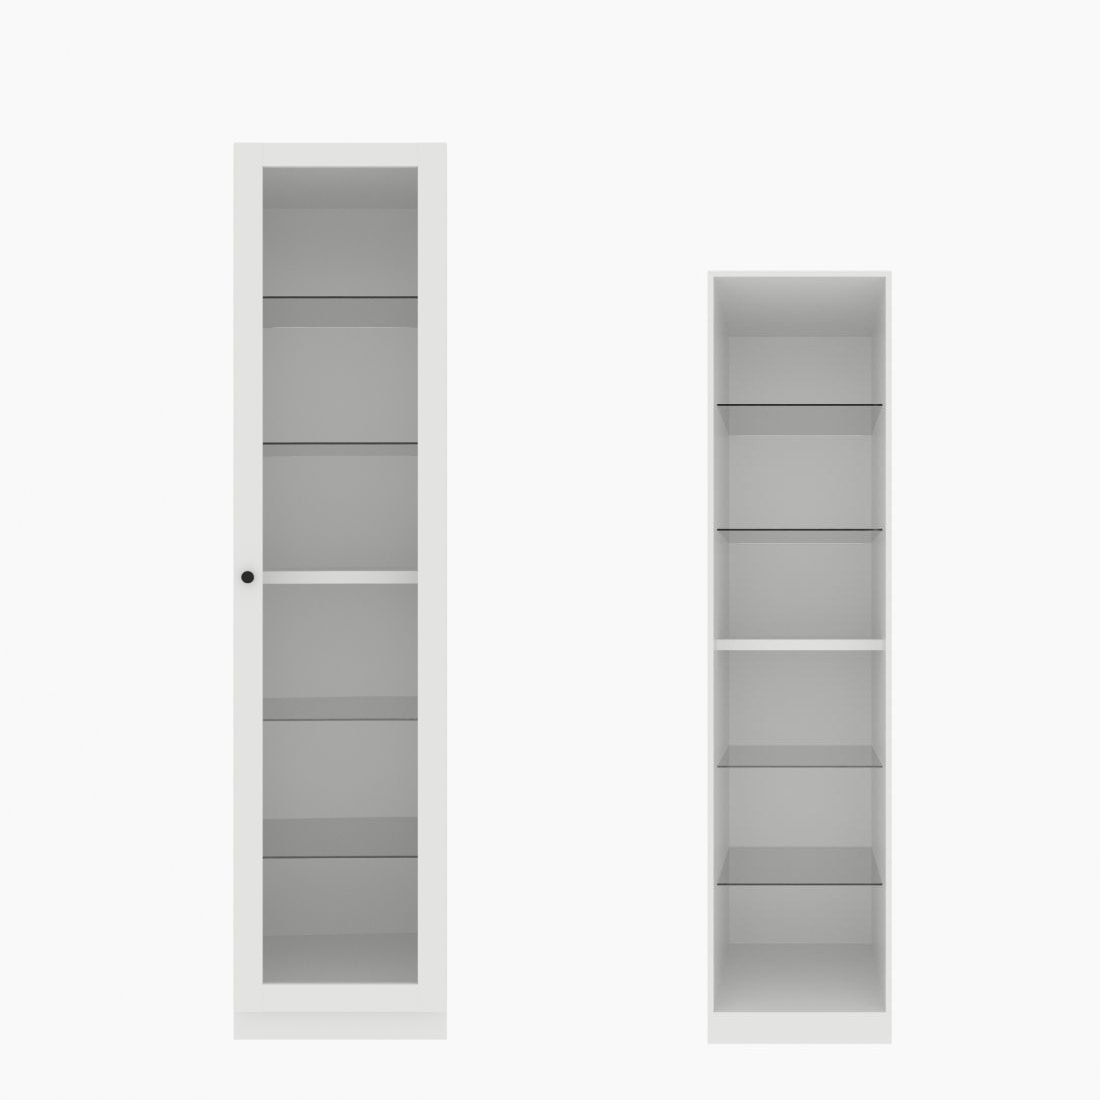 ตู้เสื้อผ้า ตู้โชว์ชั้นกระจก OP-H (หน้าบานเปิดขวา) ขนาด 50 ซม. รุ่น Blox สีขาว&กระจกใส01